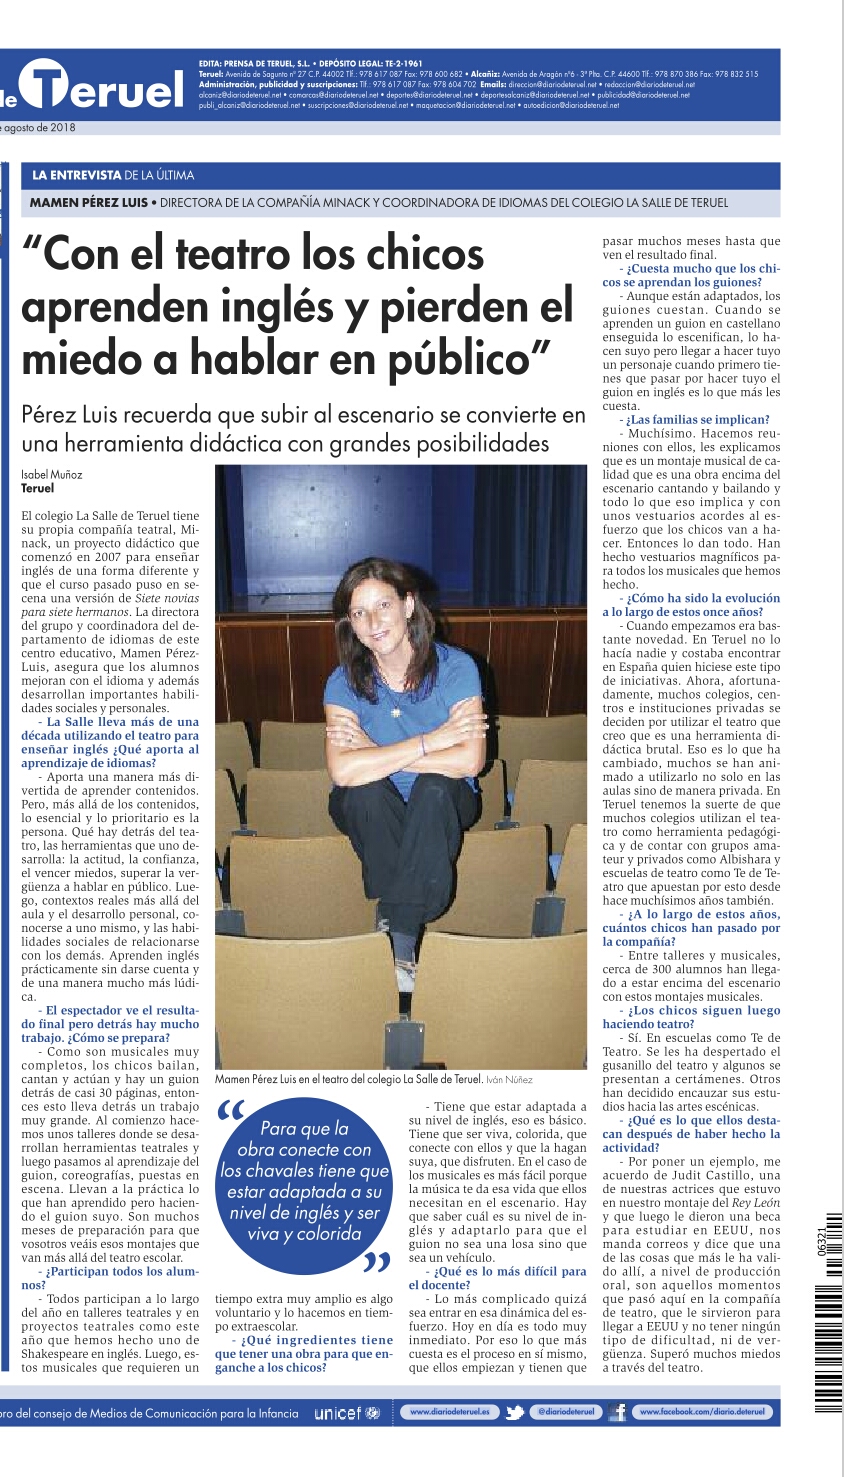 Mamen Pérez habla sobre Minack en Diario de Teruel